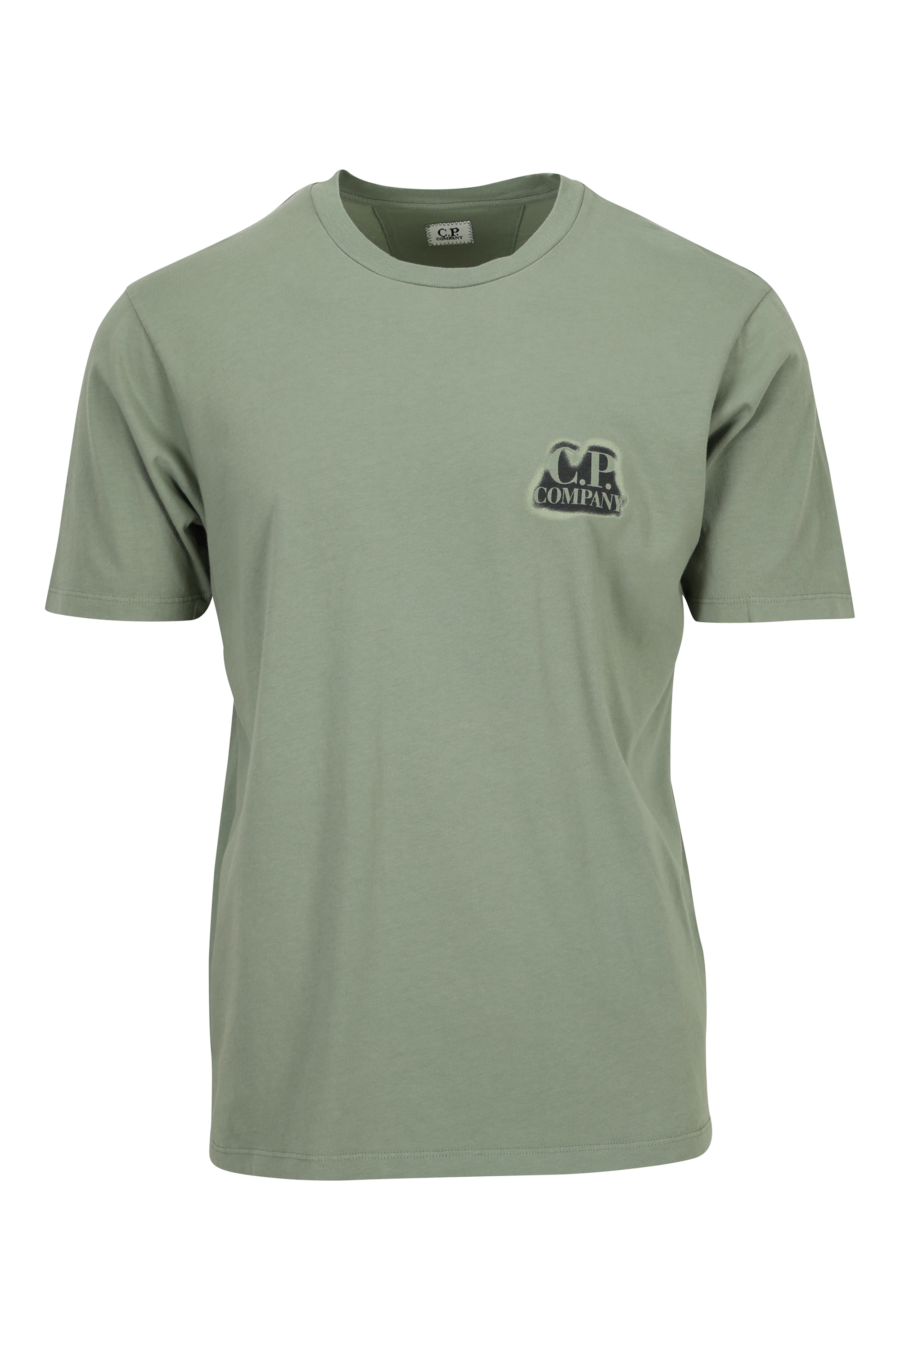 Camiseta verde grisáceo con minilogo "cp"quemado - 7620943776348